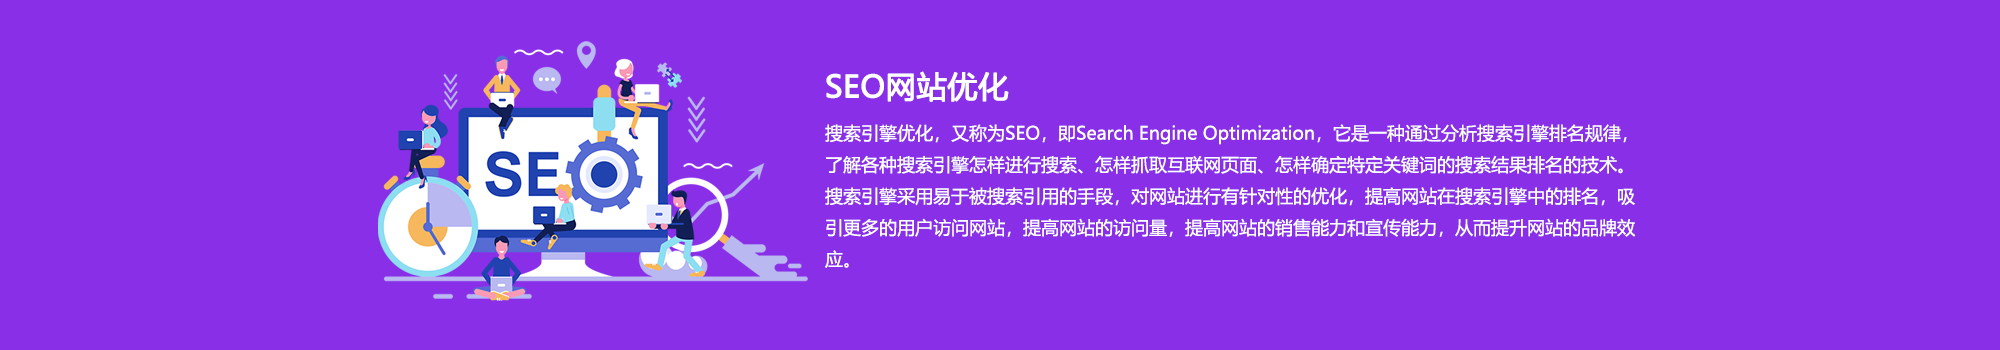 义乌SEO网站优化公司的SEO网站优化优势